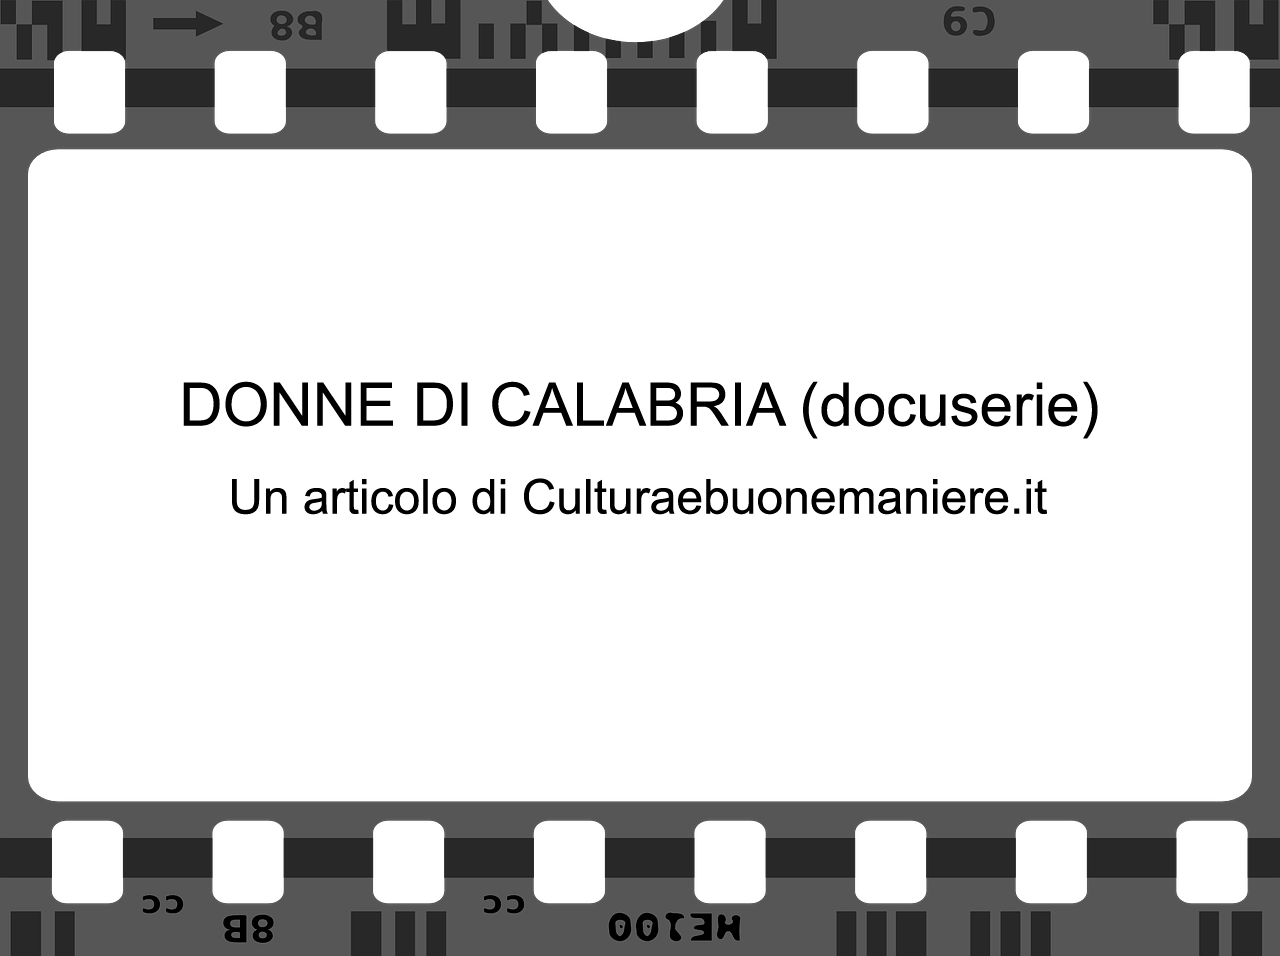 Donne di Calabria: la docuserie di Rai Storia prodotta dalla Calabria Film Commission e Anele